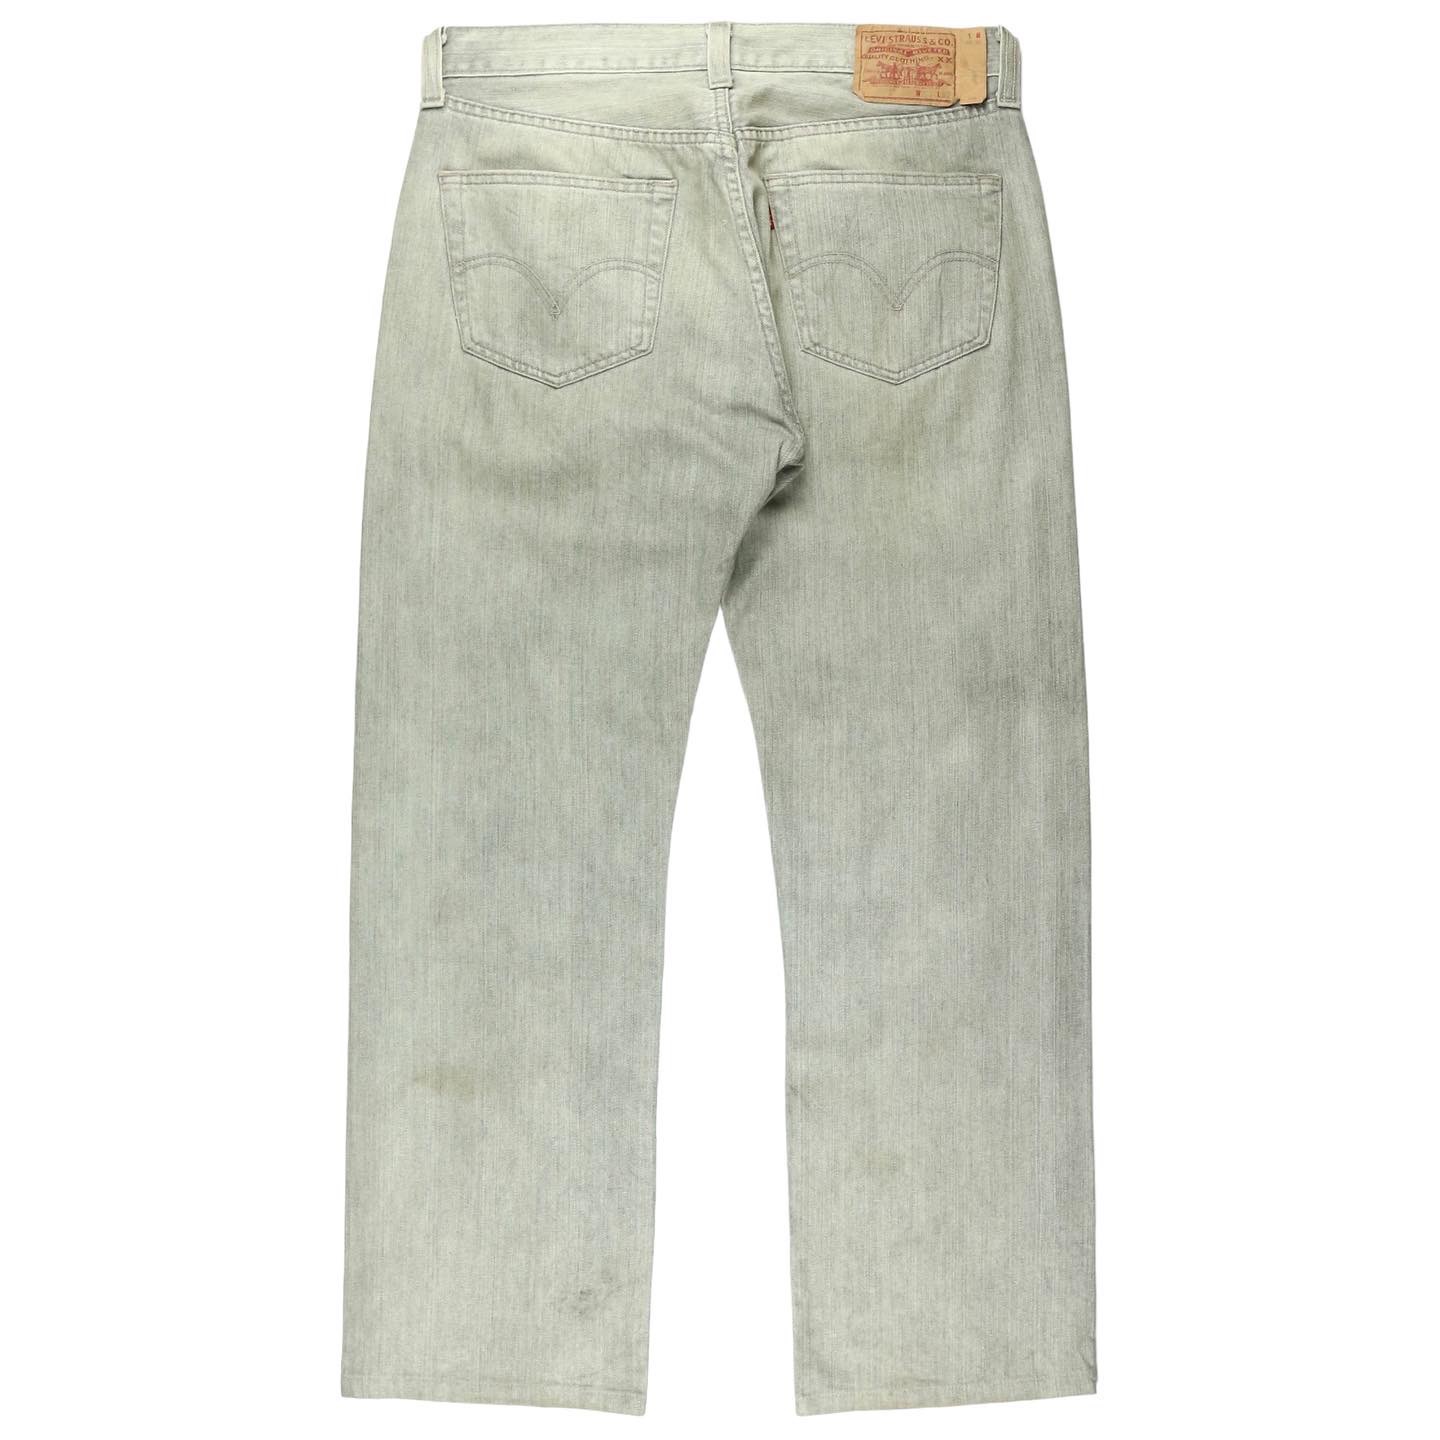 Levi’s 501 Jeans Size 32